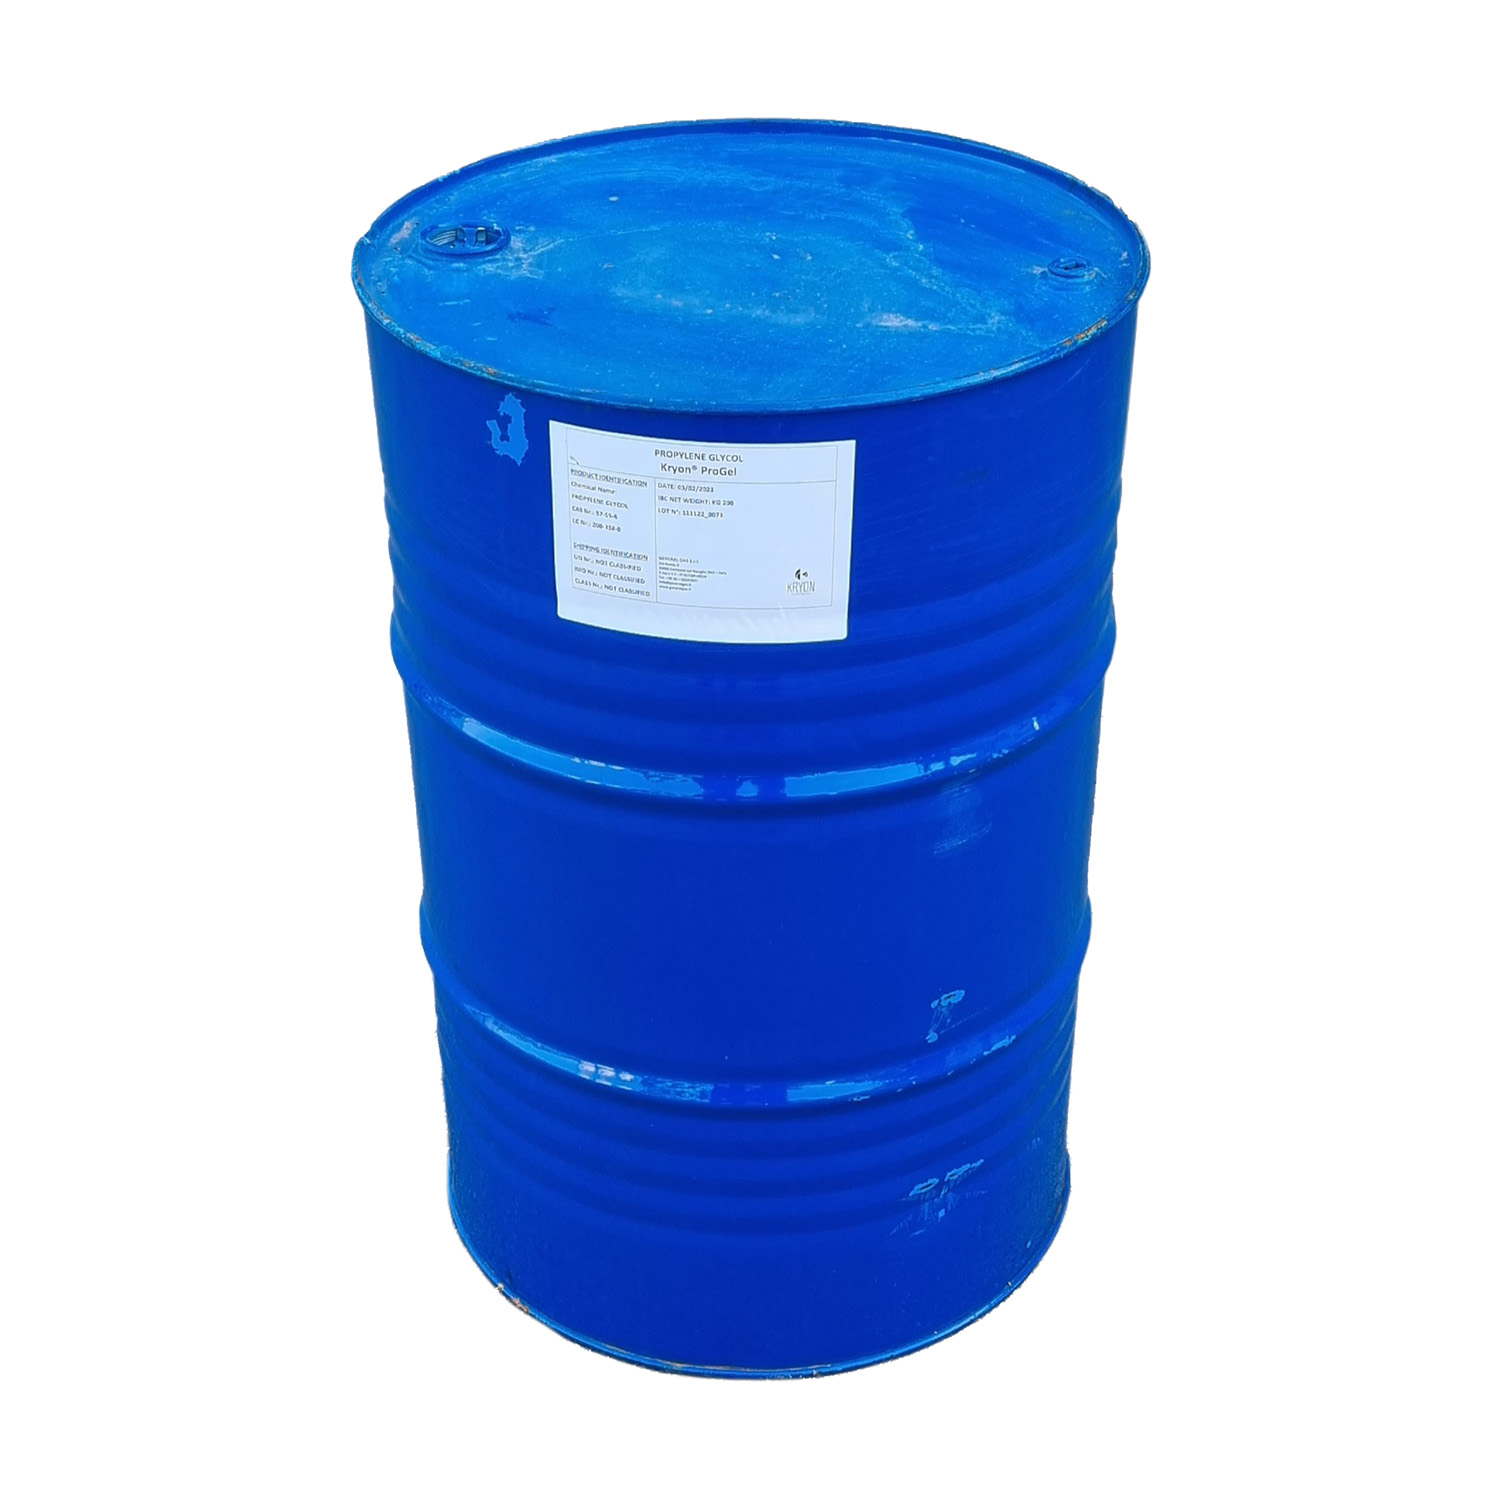 Kryon® ProGel - Glicole Propilenico Inibito (MPG) in fusto metallico capacità 200 kg (colorato rosso)